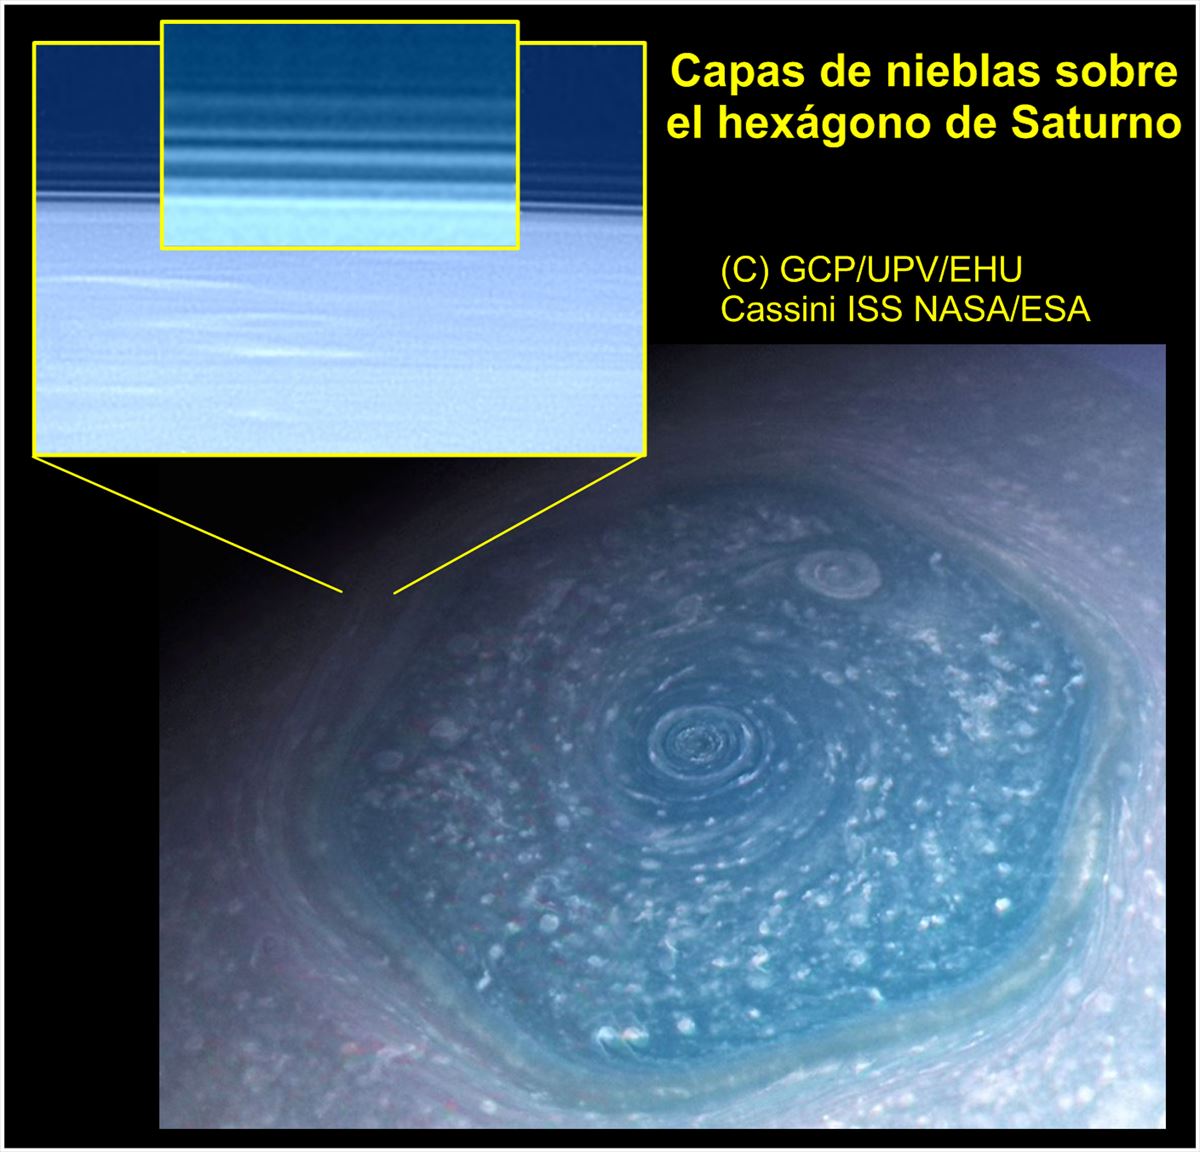 Imagen obtenida por la nave espacial Cassini